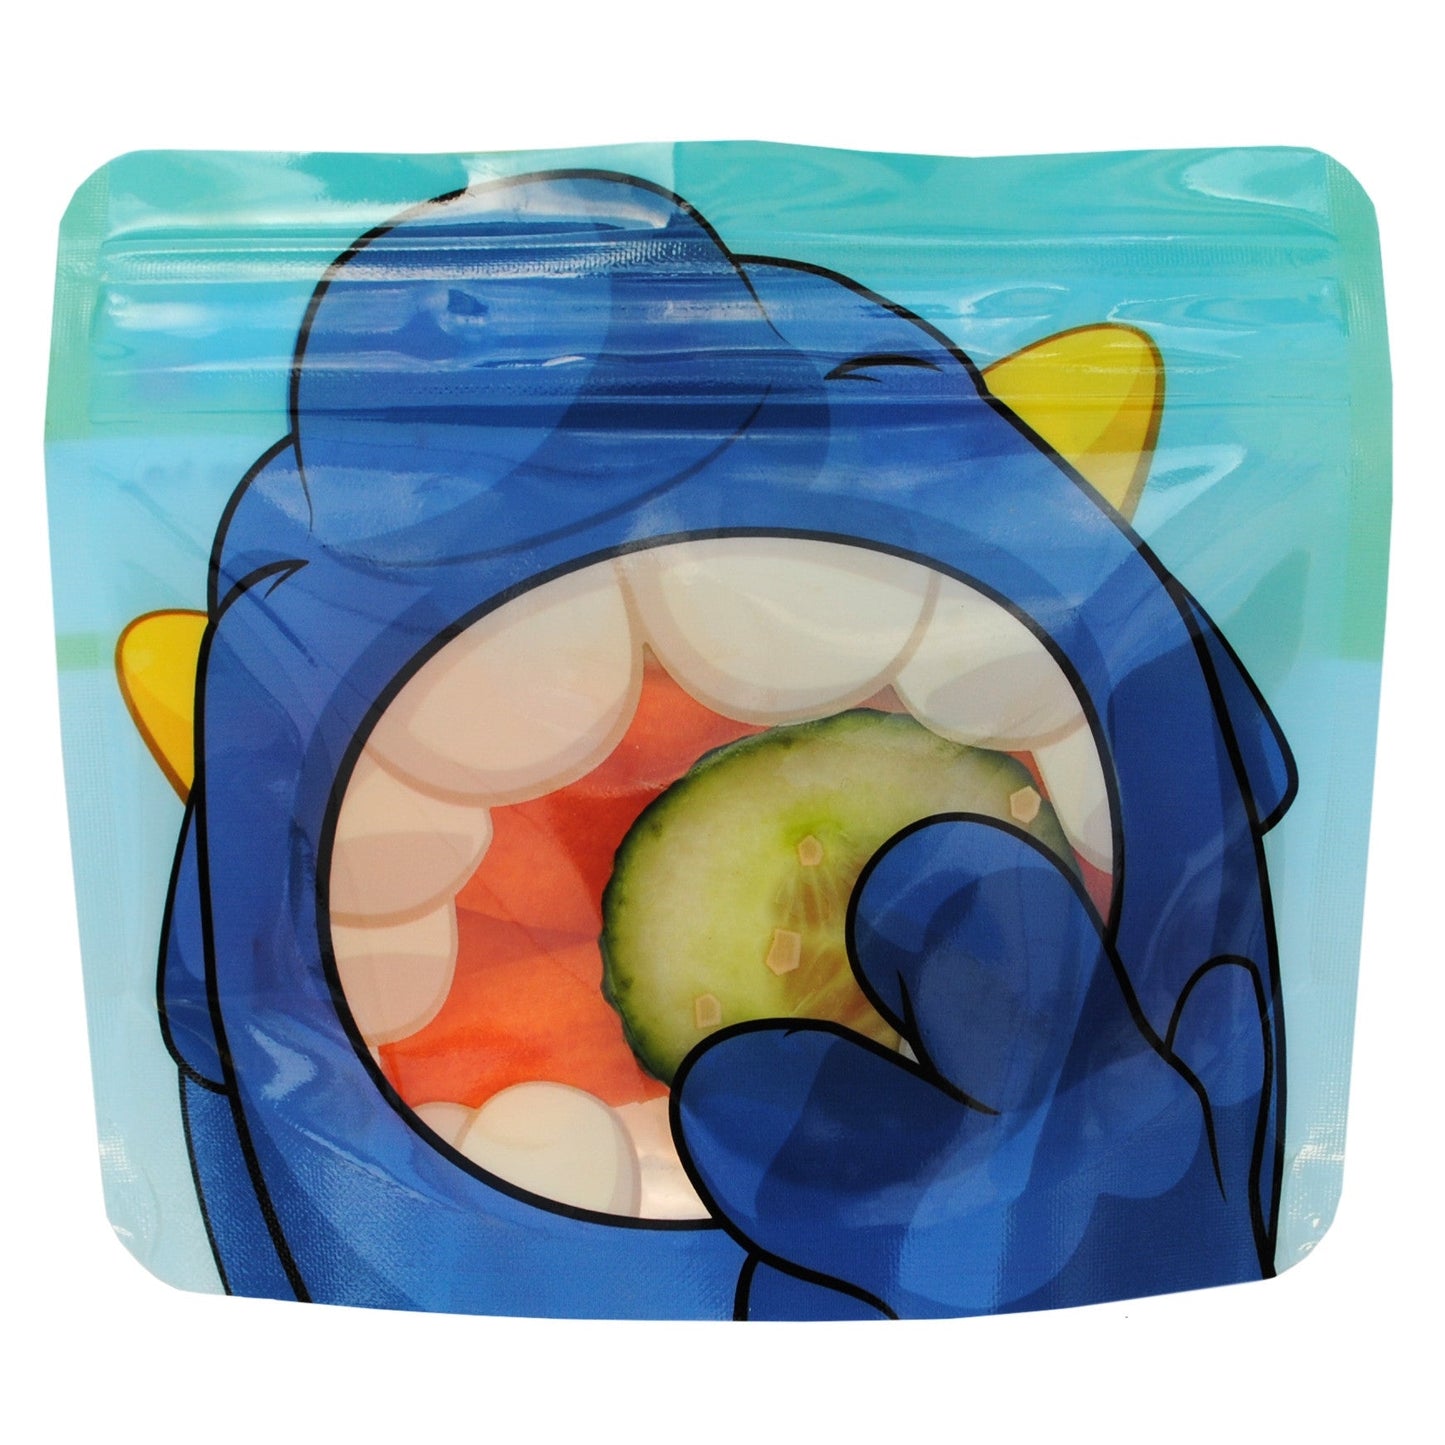 Nom Nom Kids - 10 Reusable snack bags